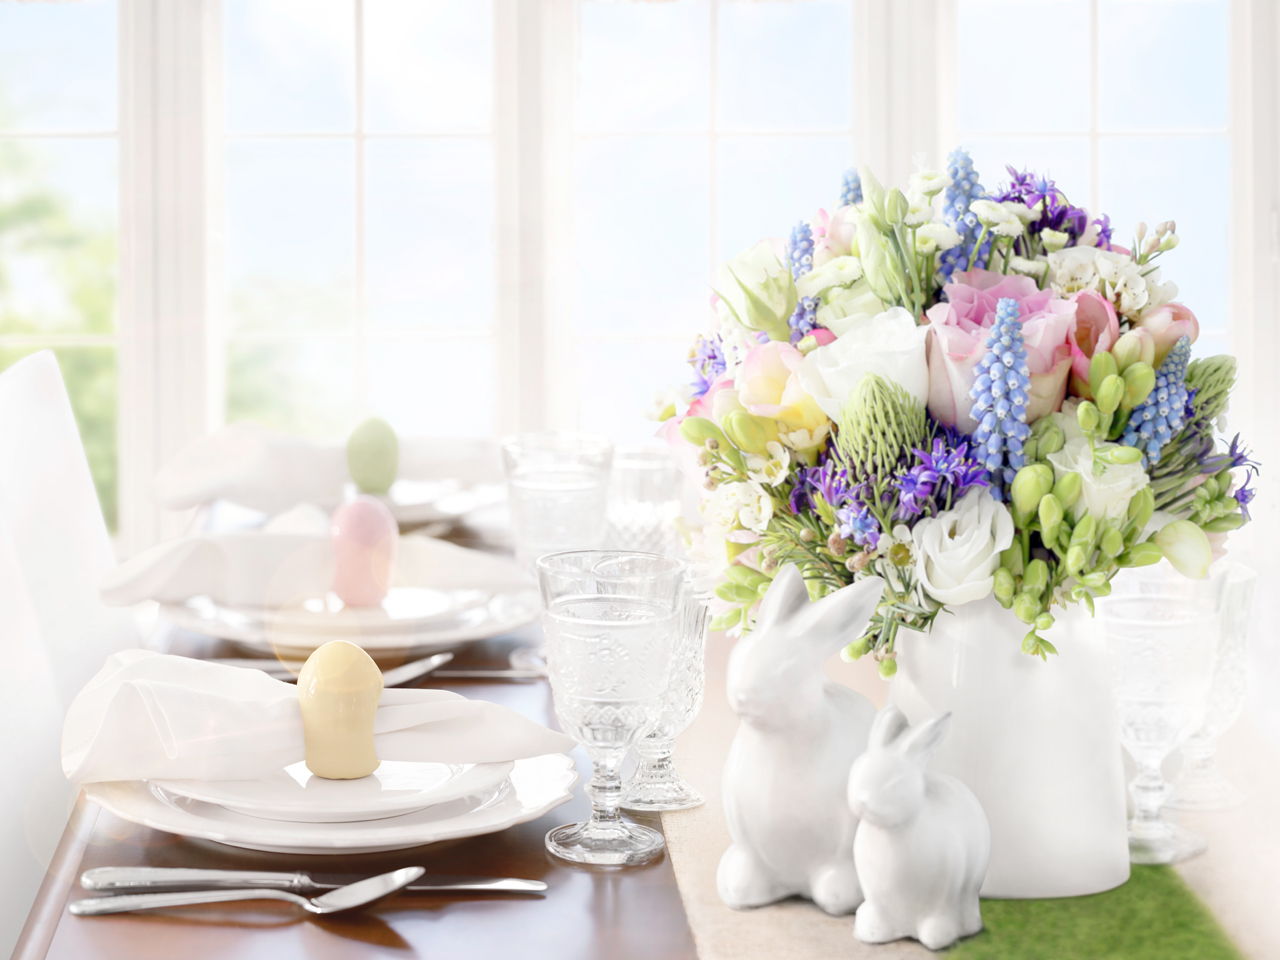 Impresione en su desayuno de Pascua: cupcakes de Pascua y una deliciosa decoración